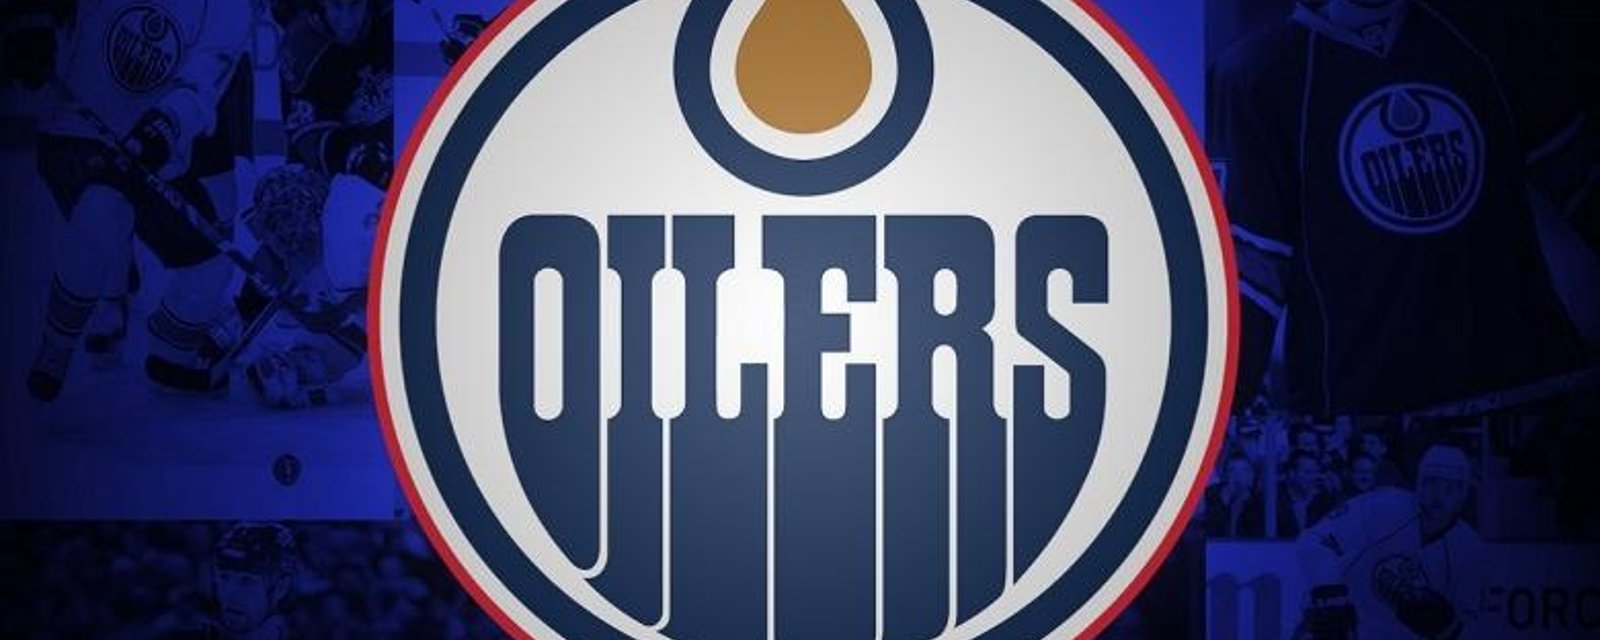 Oilers rumored in trade for veteran defenseman.